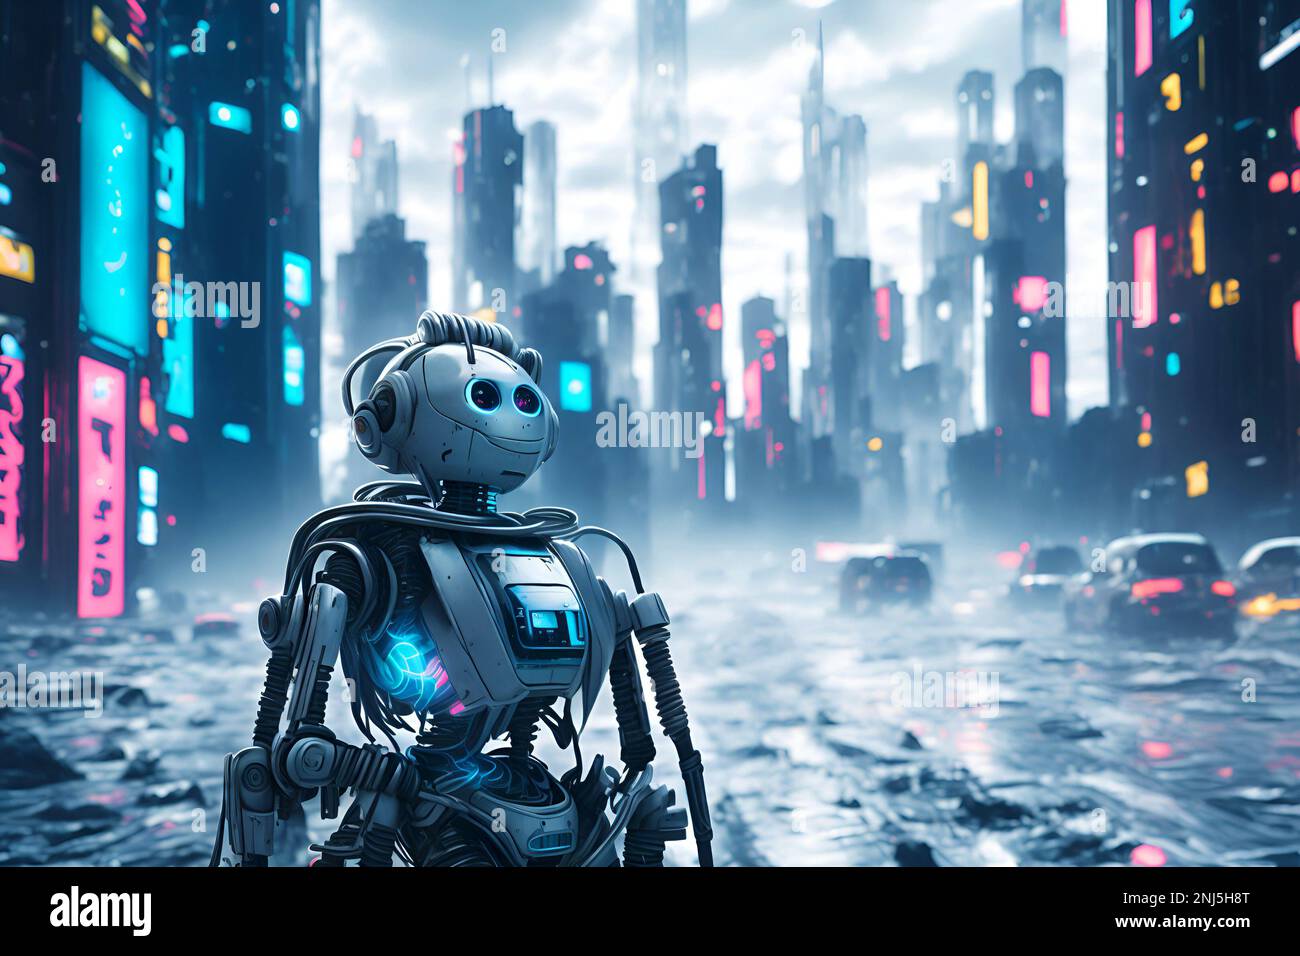 Android-Roboter patrouillieren gesetzlose Straßen dystopischer Cyber-Stadt am Rande des gesellschaftlichen Zusammenbruchs. Abgeleitete KI-Illustration. Stockfoto